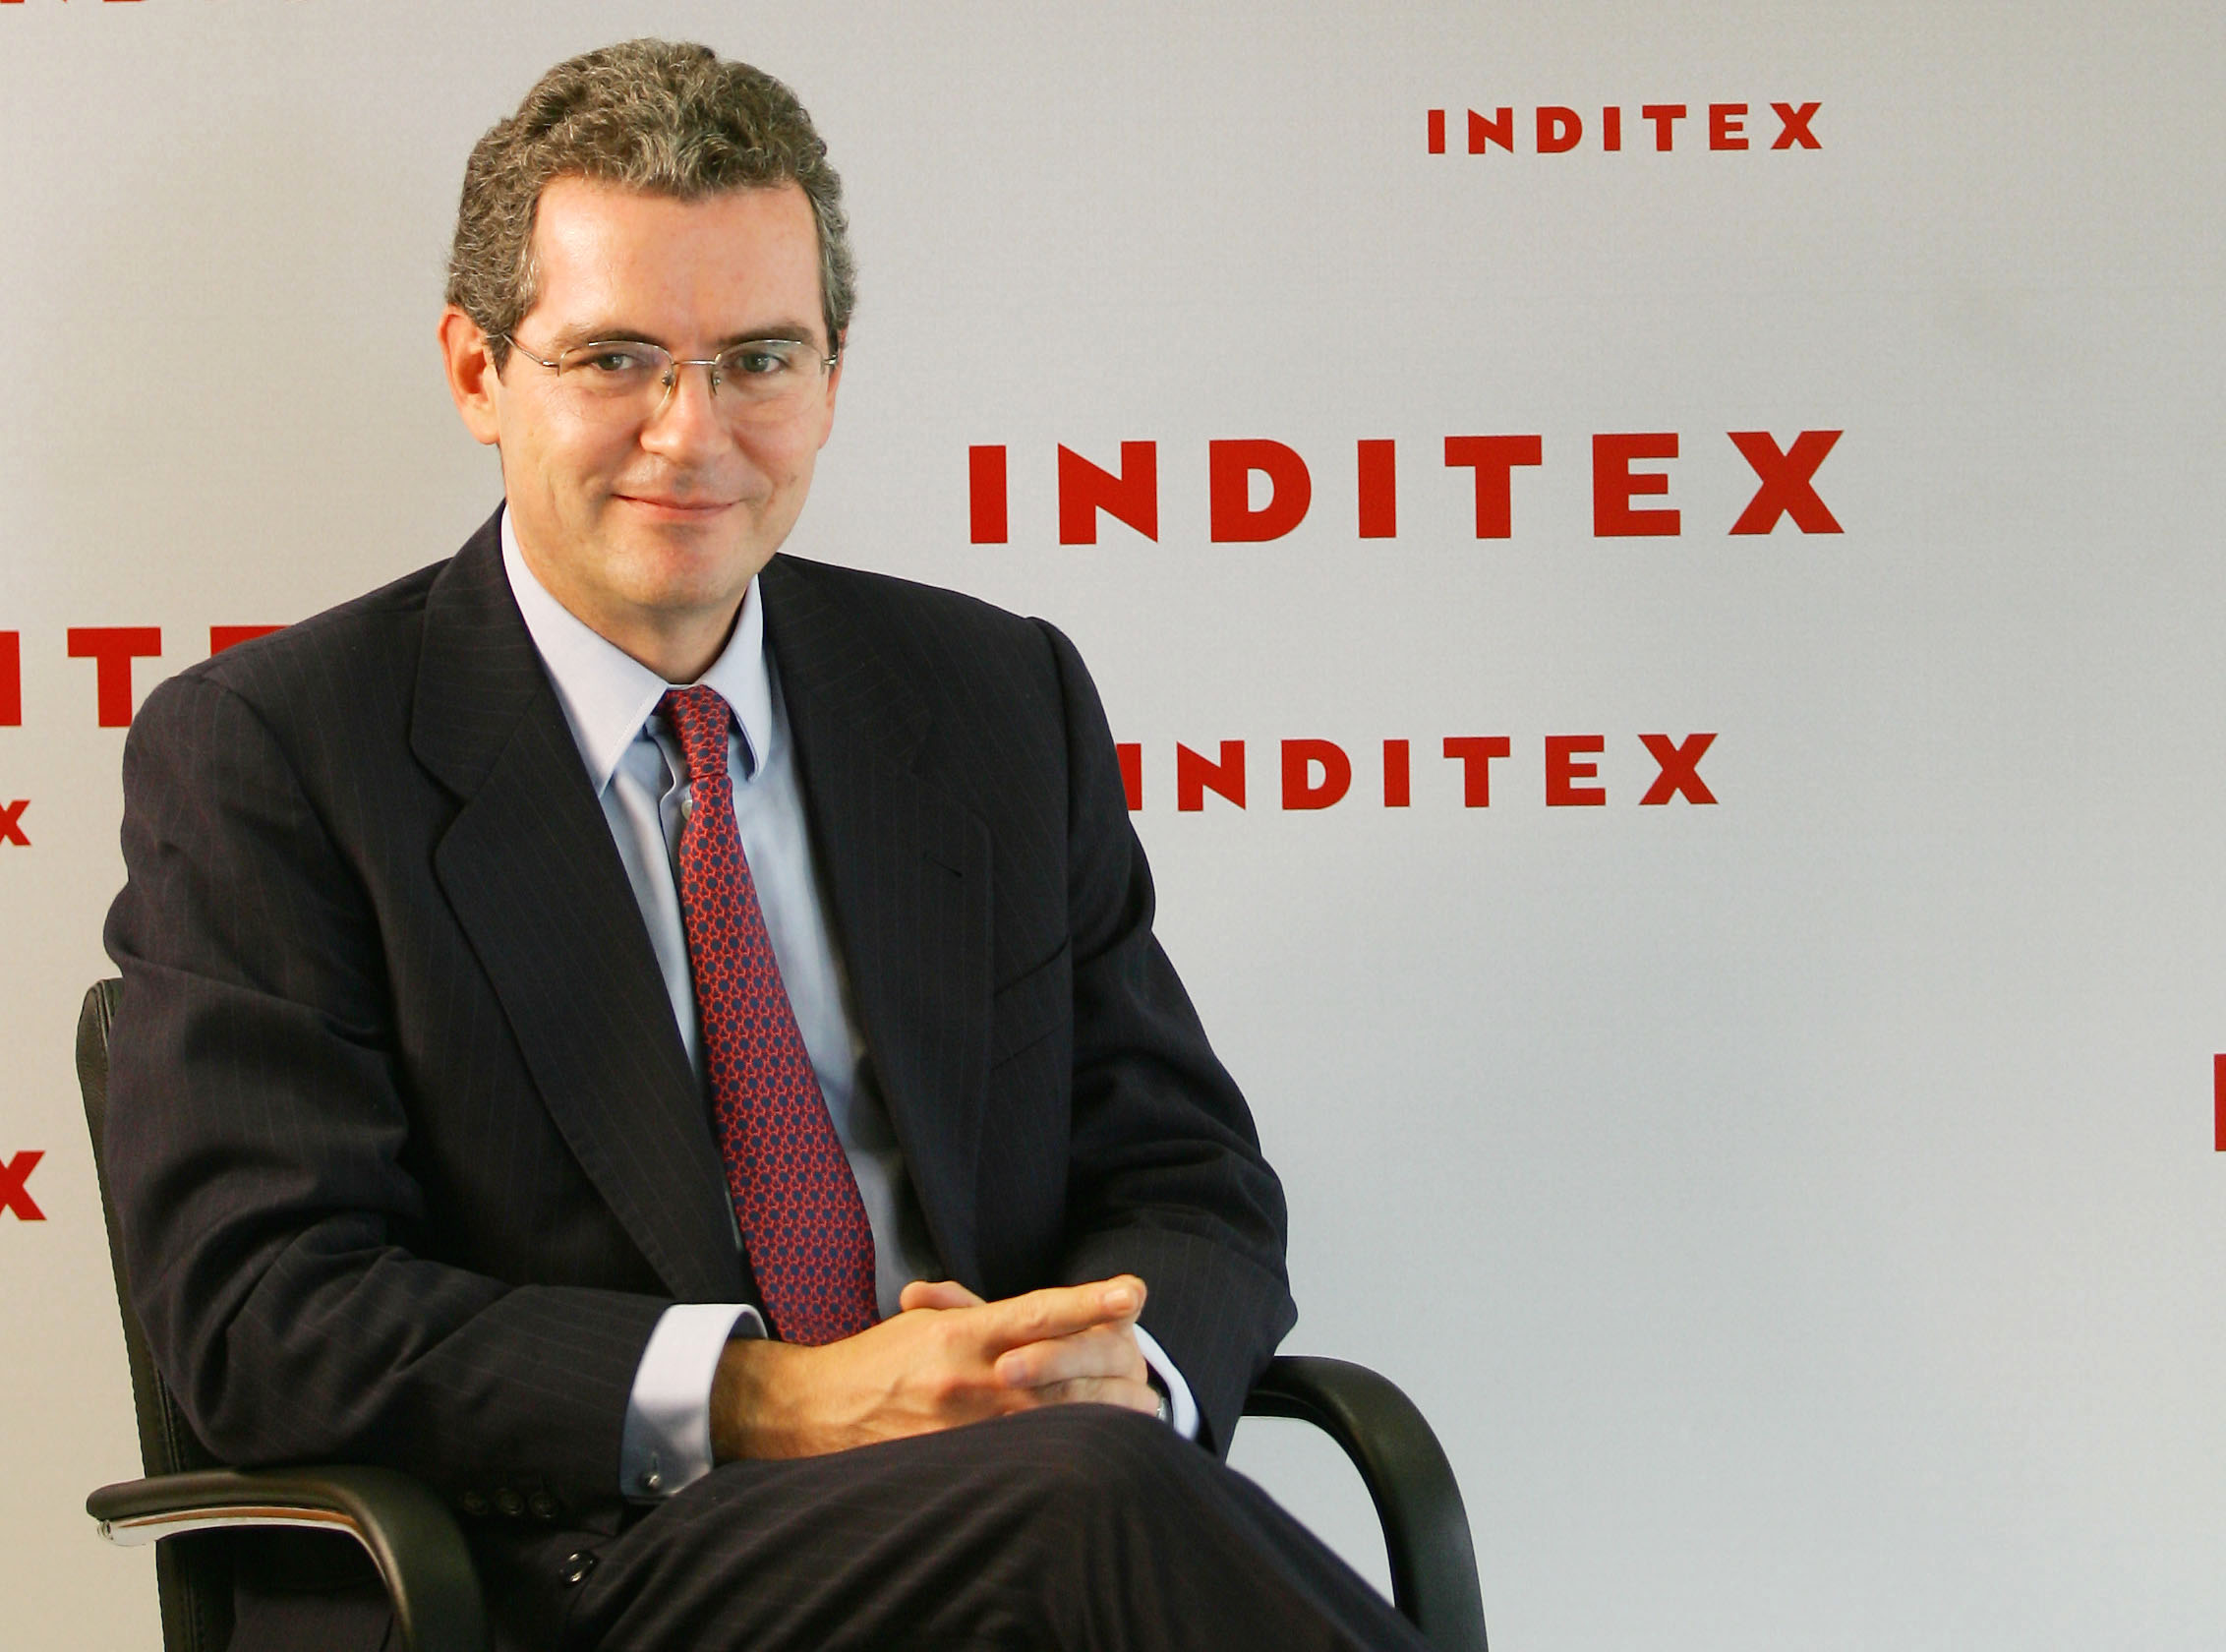 Inditex incorpora el pago móvil en todas sus tiendas